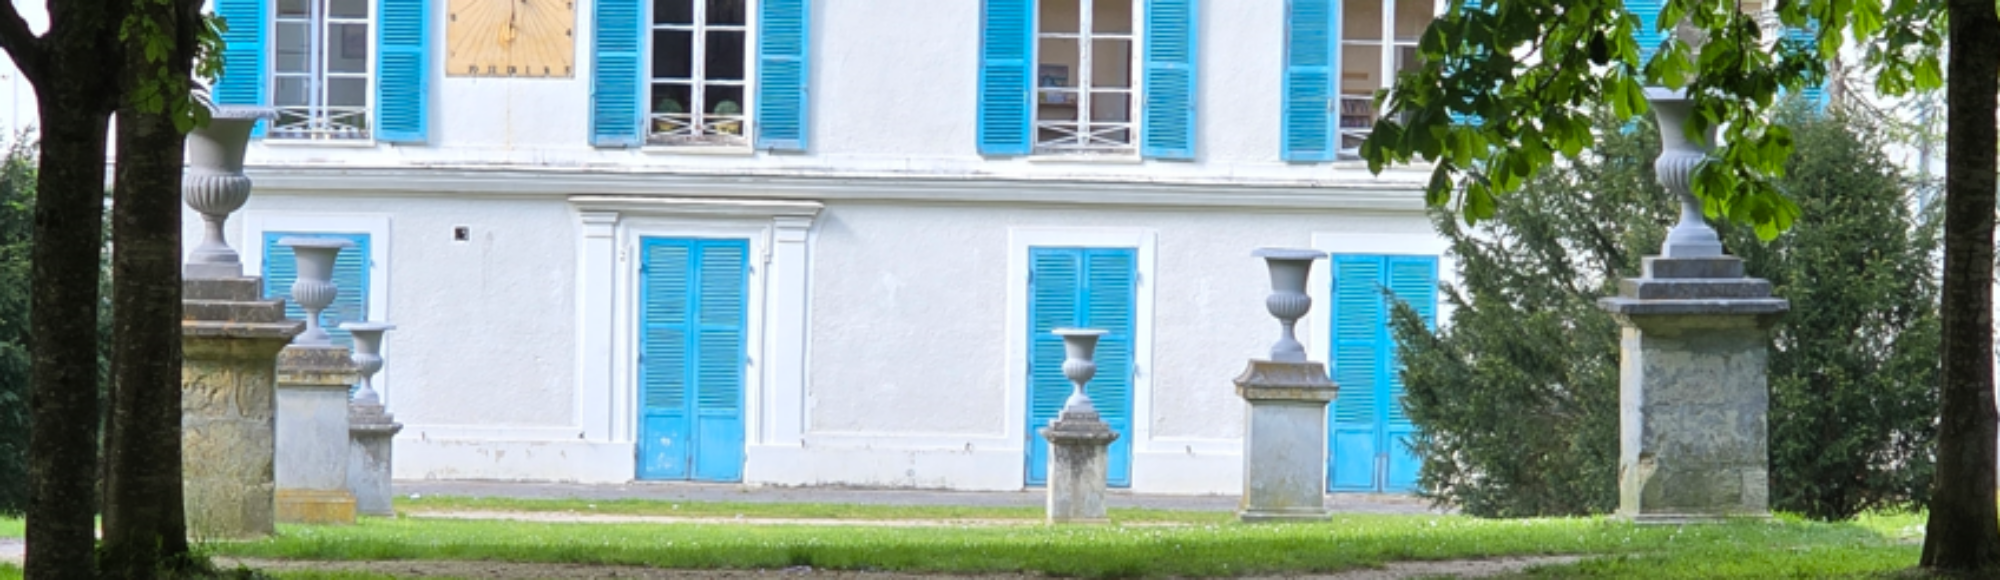 allée bordée de 6 vasque sur des socle, face à un bâtiment blanc avec des volets bleu turquoise